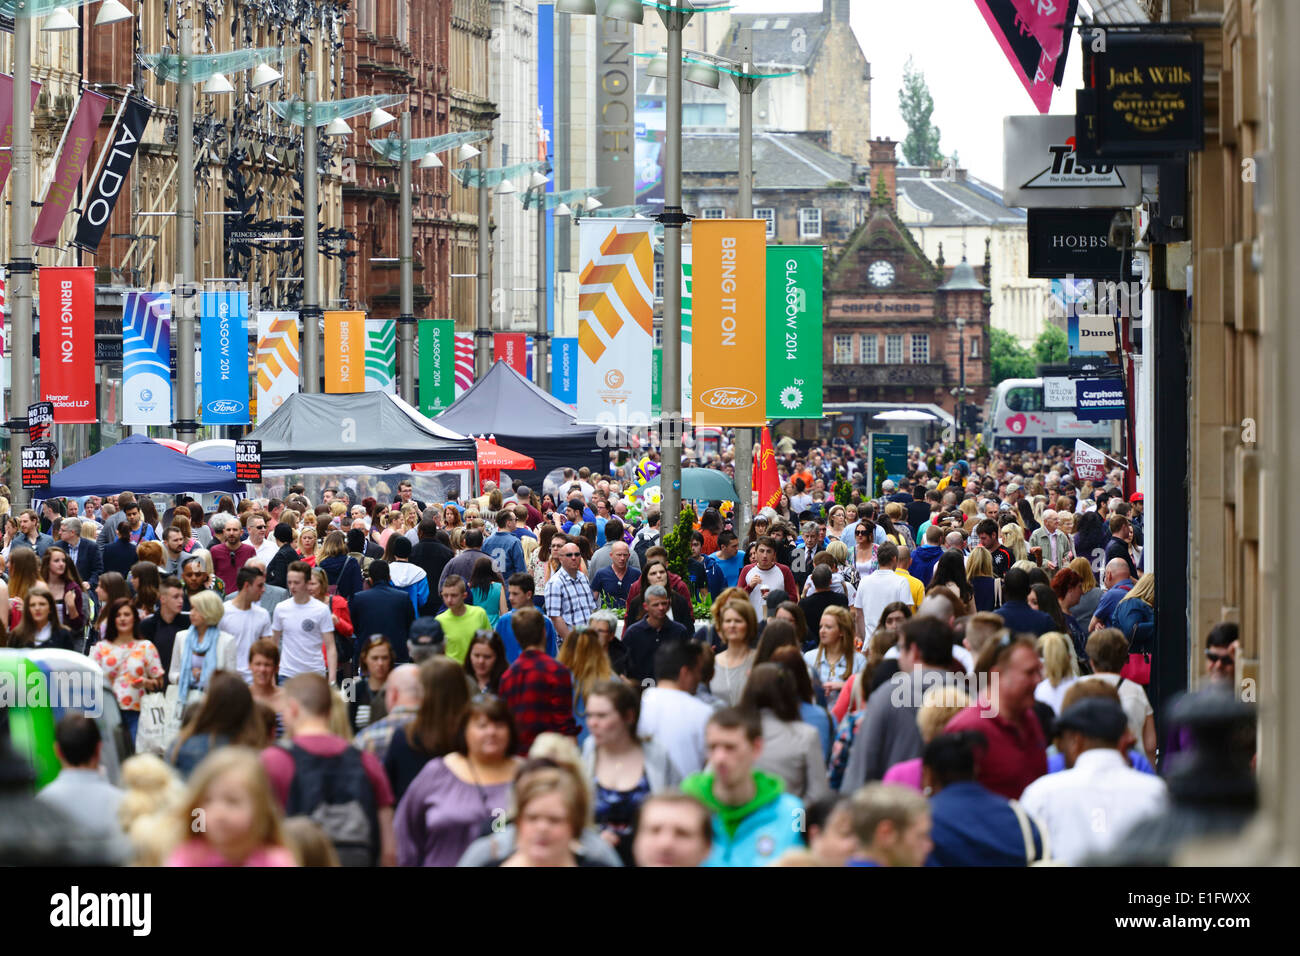 Una concurrida calle Buchanan en el centro de la ciudad de Glasgow con coloridas banderas para dar la bienvenida a los visitantes antes de los Glasgow 2014 Commonwealth Games, Escocia, Reino Unido Foto de stock